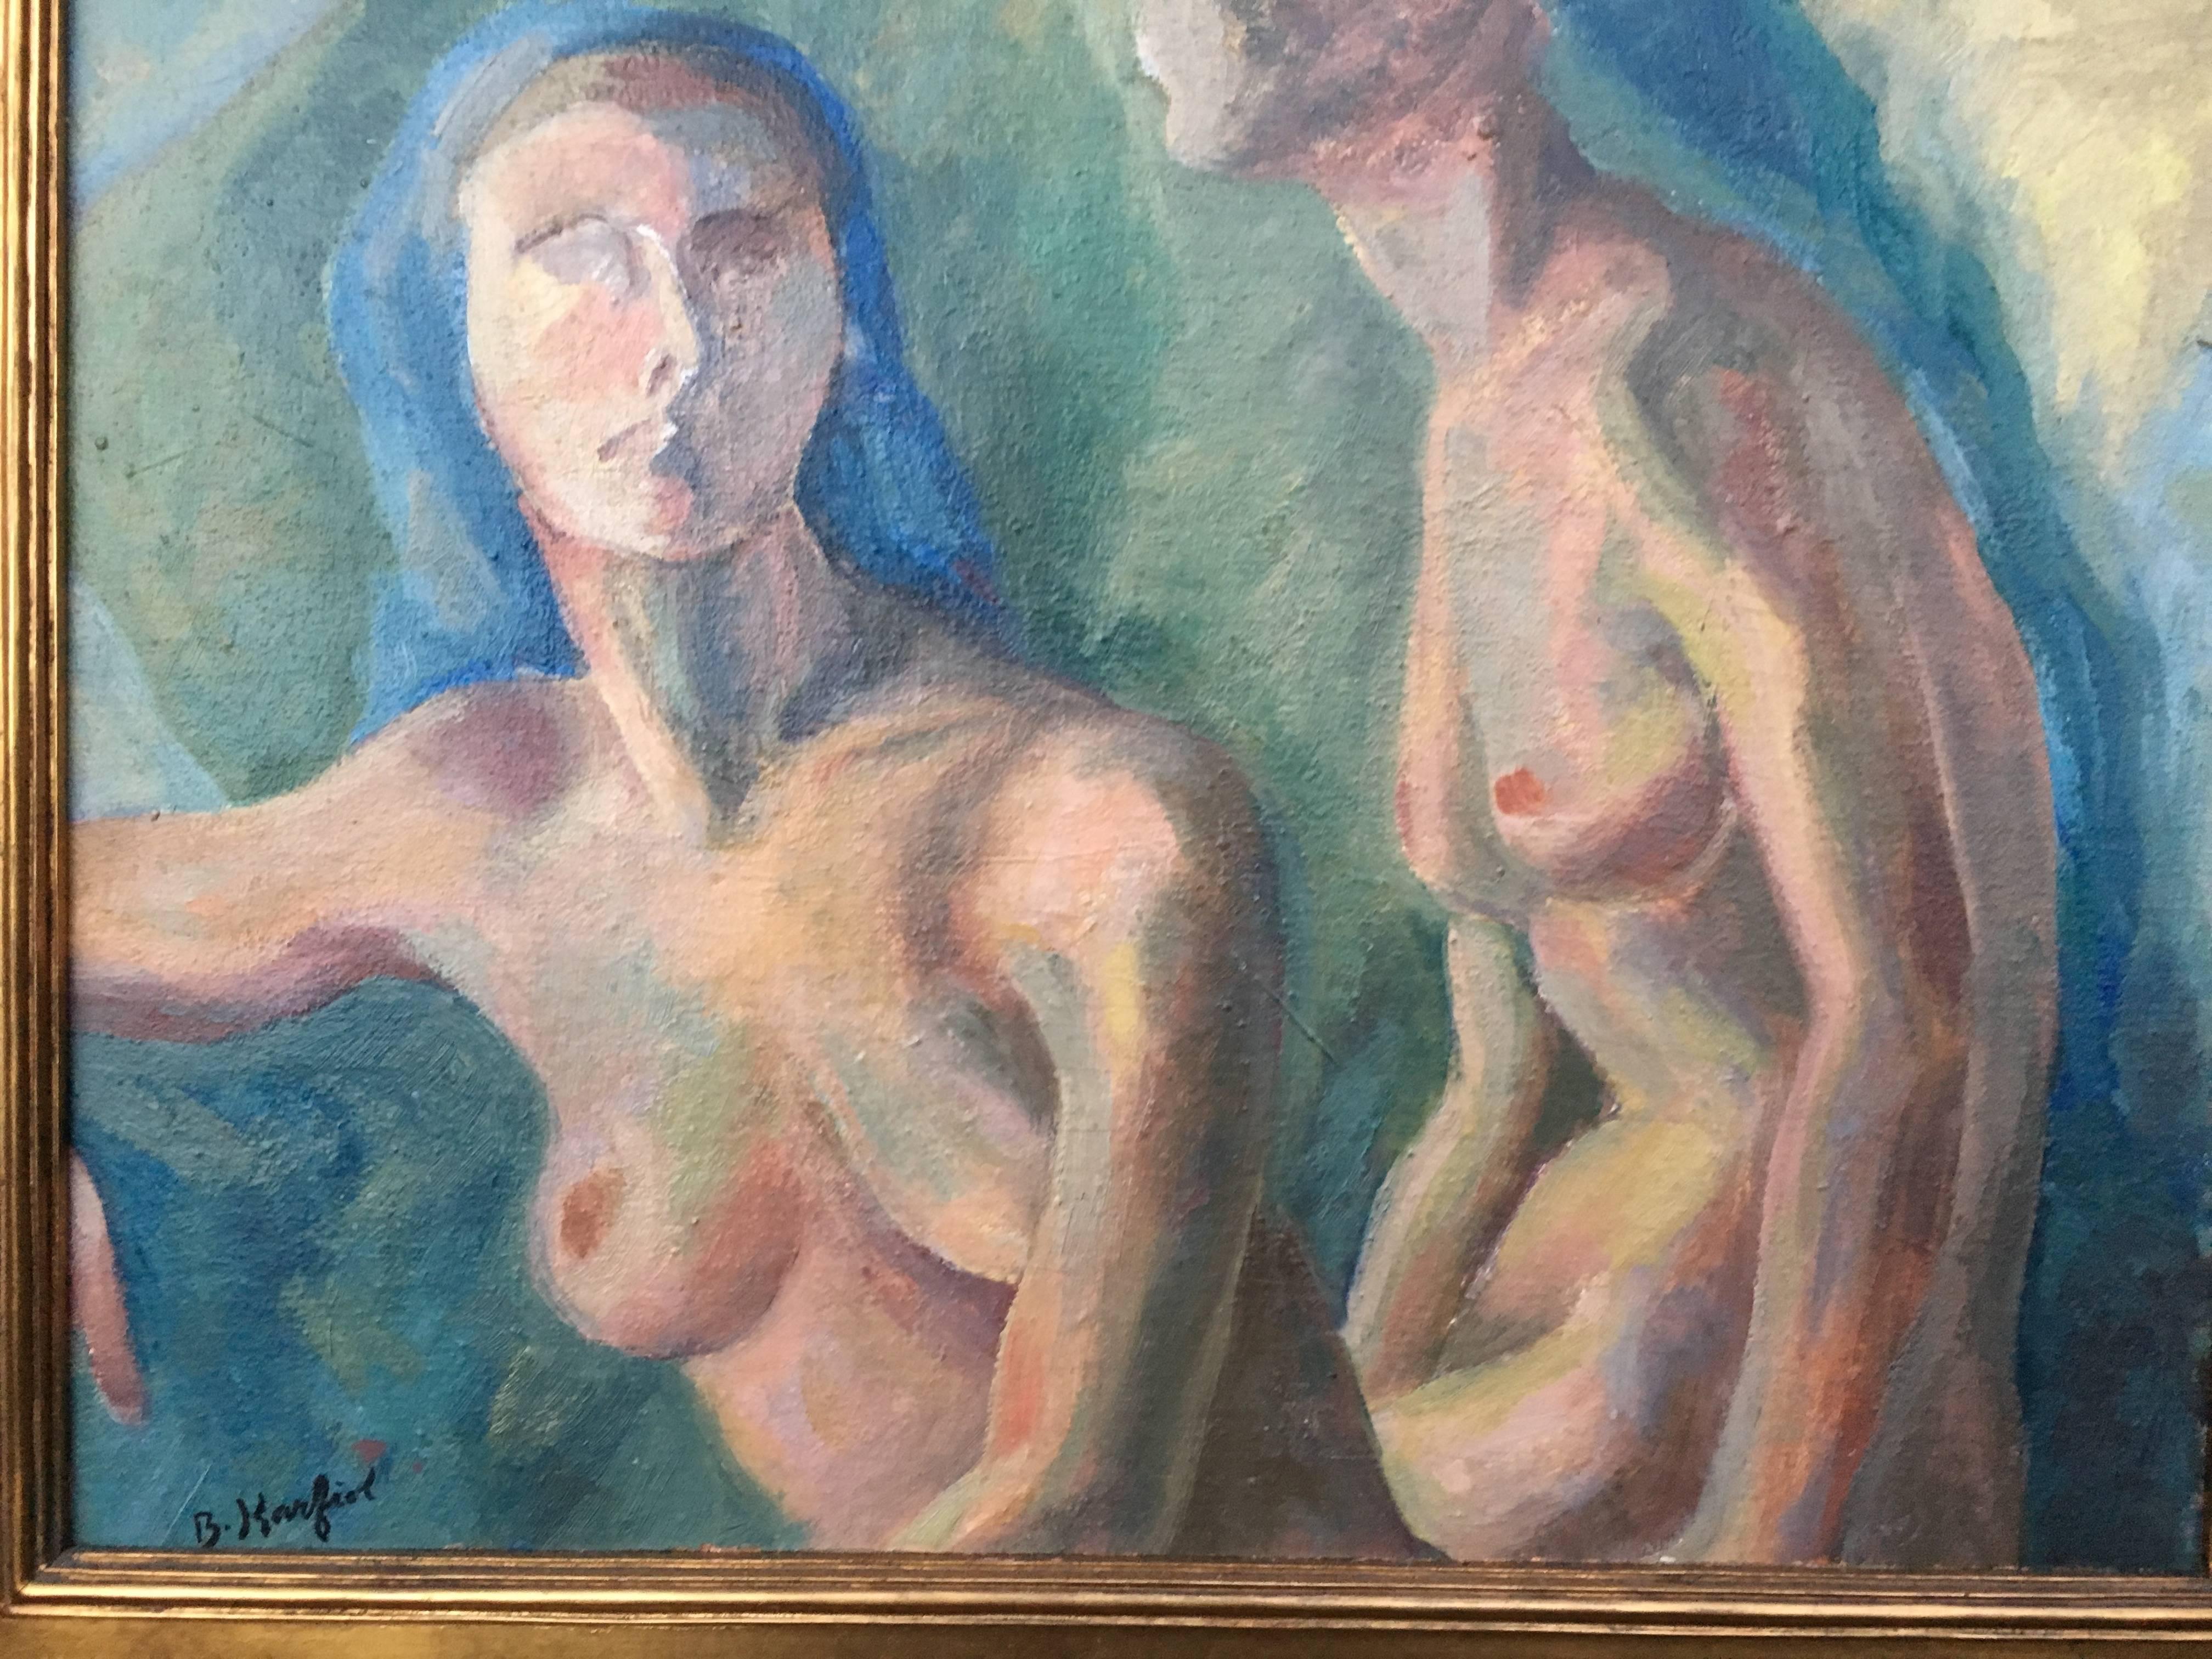 Two Blue Nudes - Painting by Bernard Karfiol